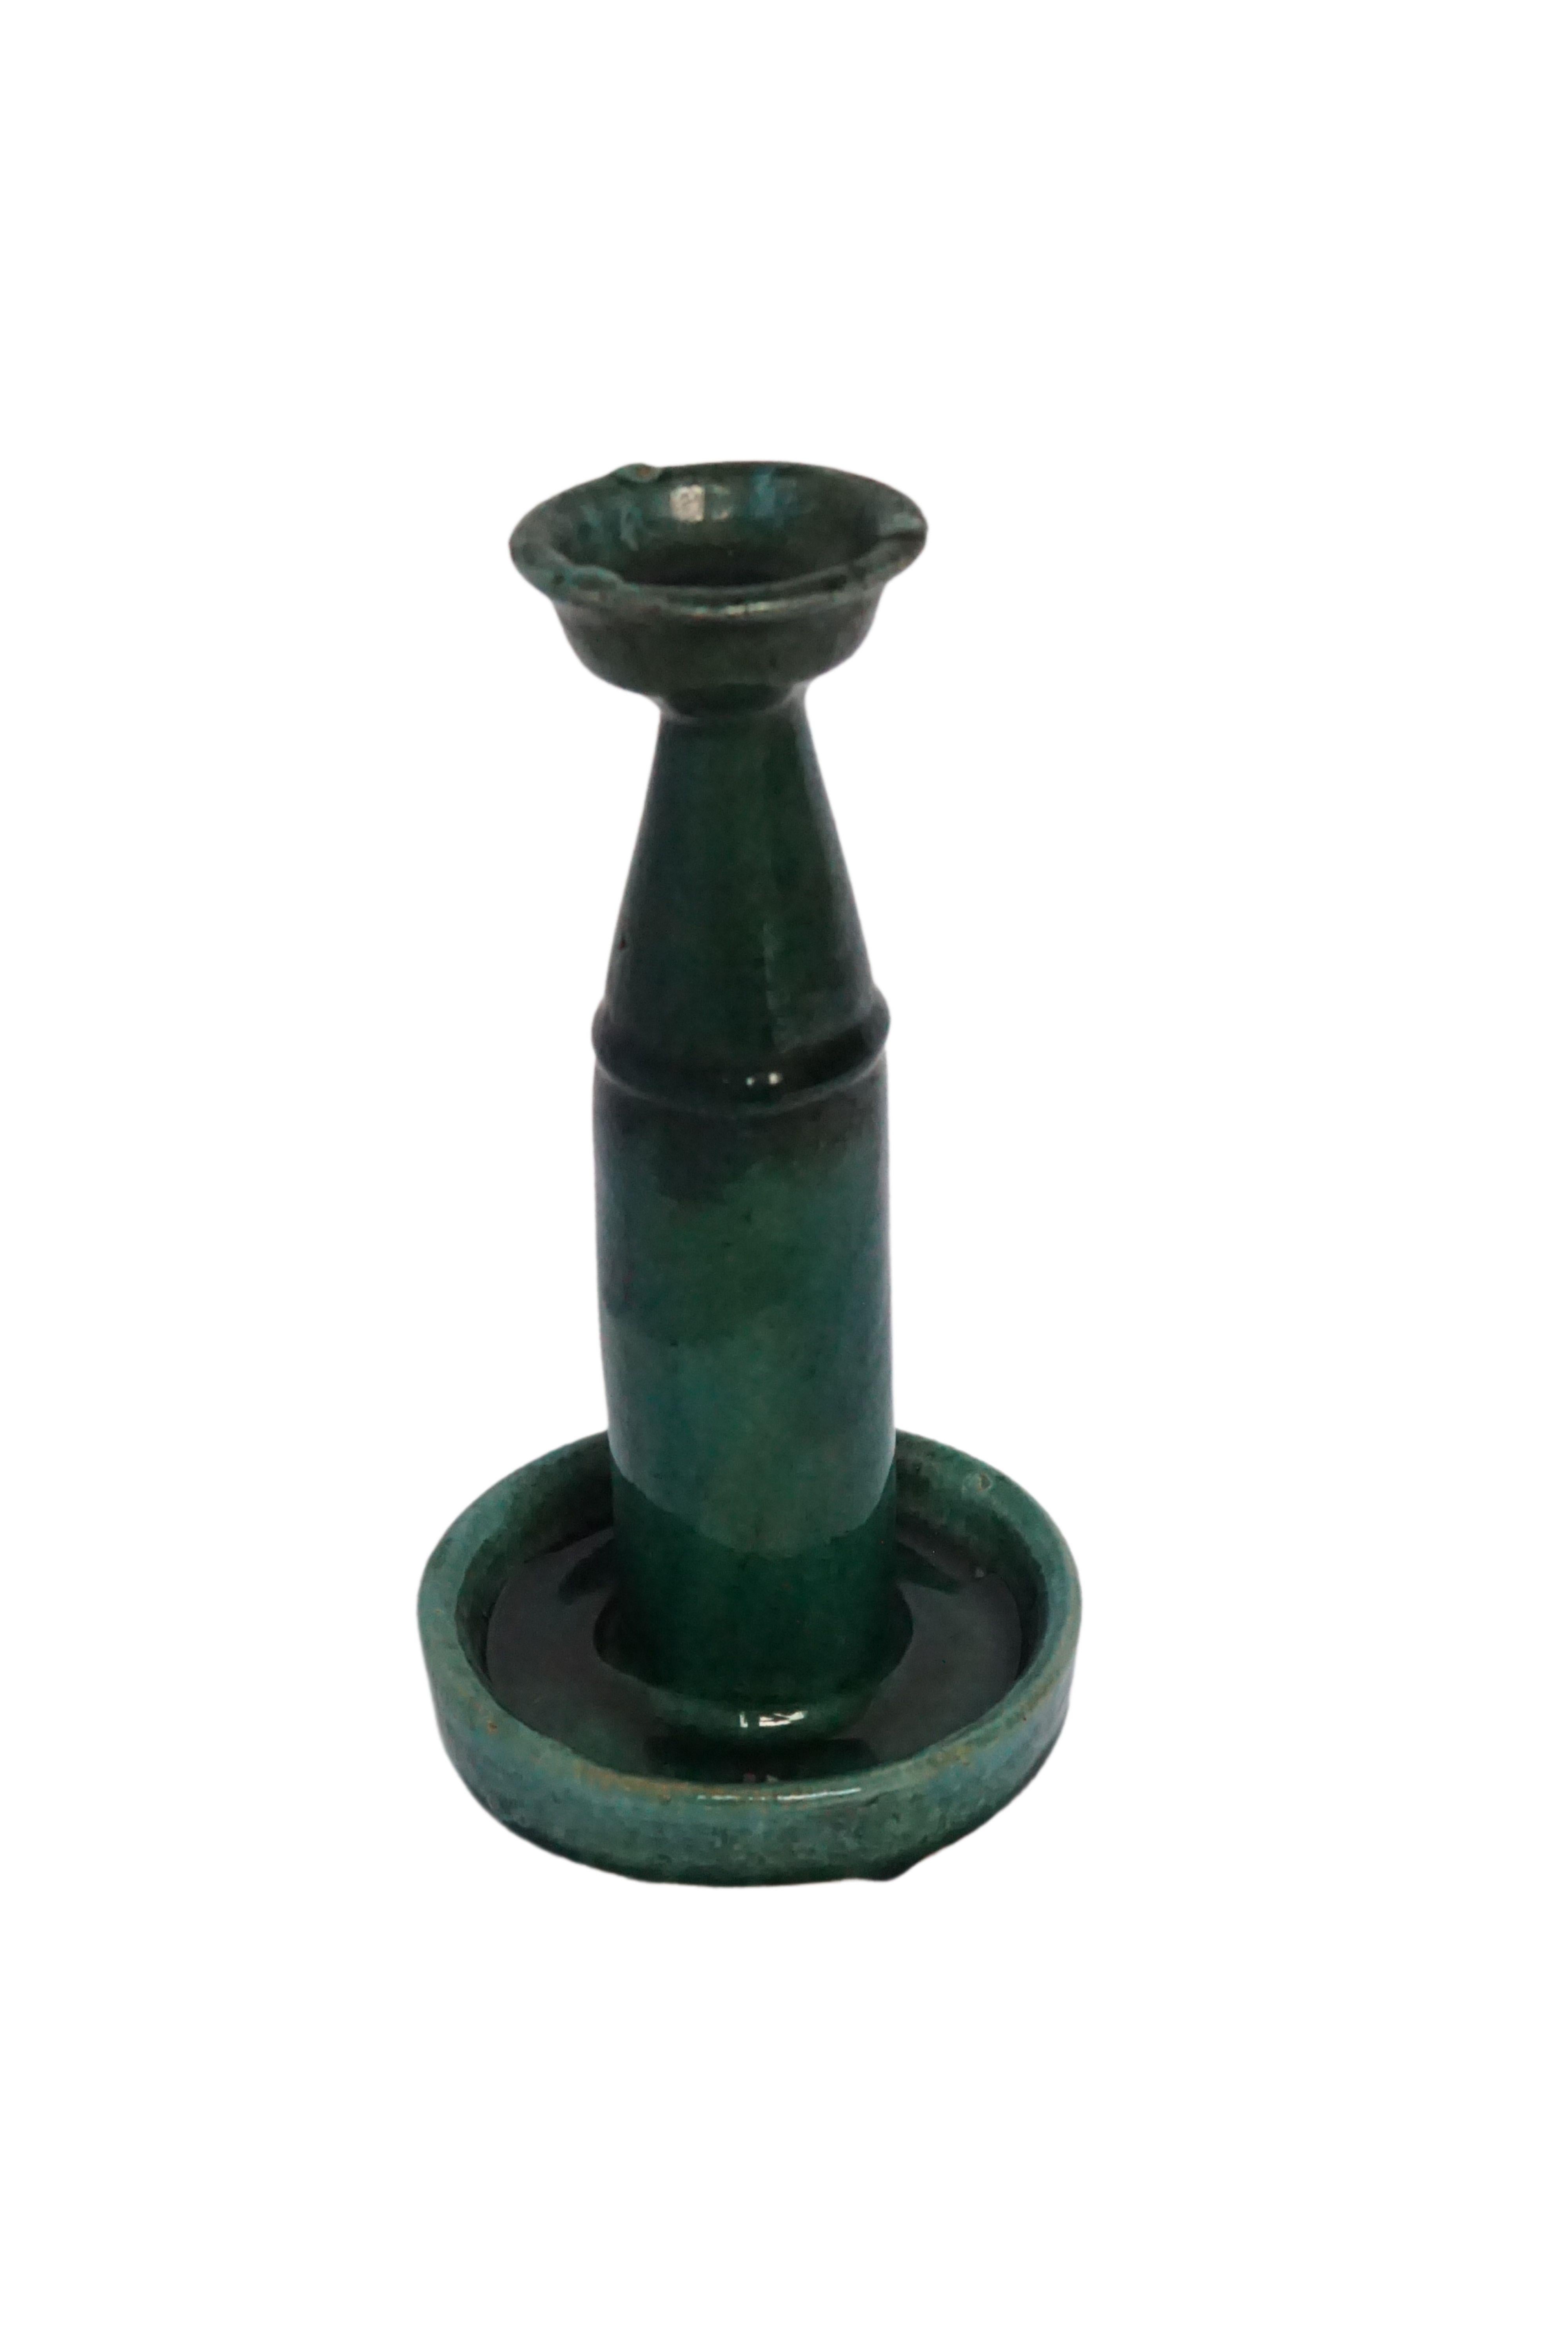 Cette lampe à huile en porcelaine de Shiwan, datant du milieu du 20e siècle, présente une glaçure verte. La céramique de Shiwan est un style de poterie chinoise provenant du district de Shiwanzhen, près de Guangdong, en Chine. Un objet décoratif ou